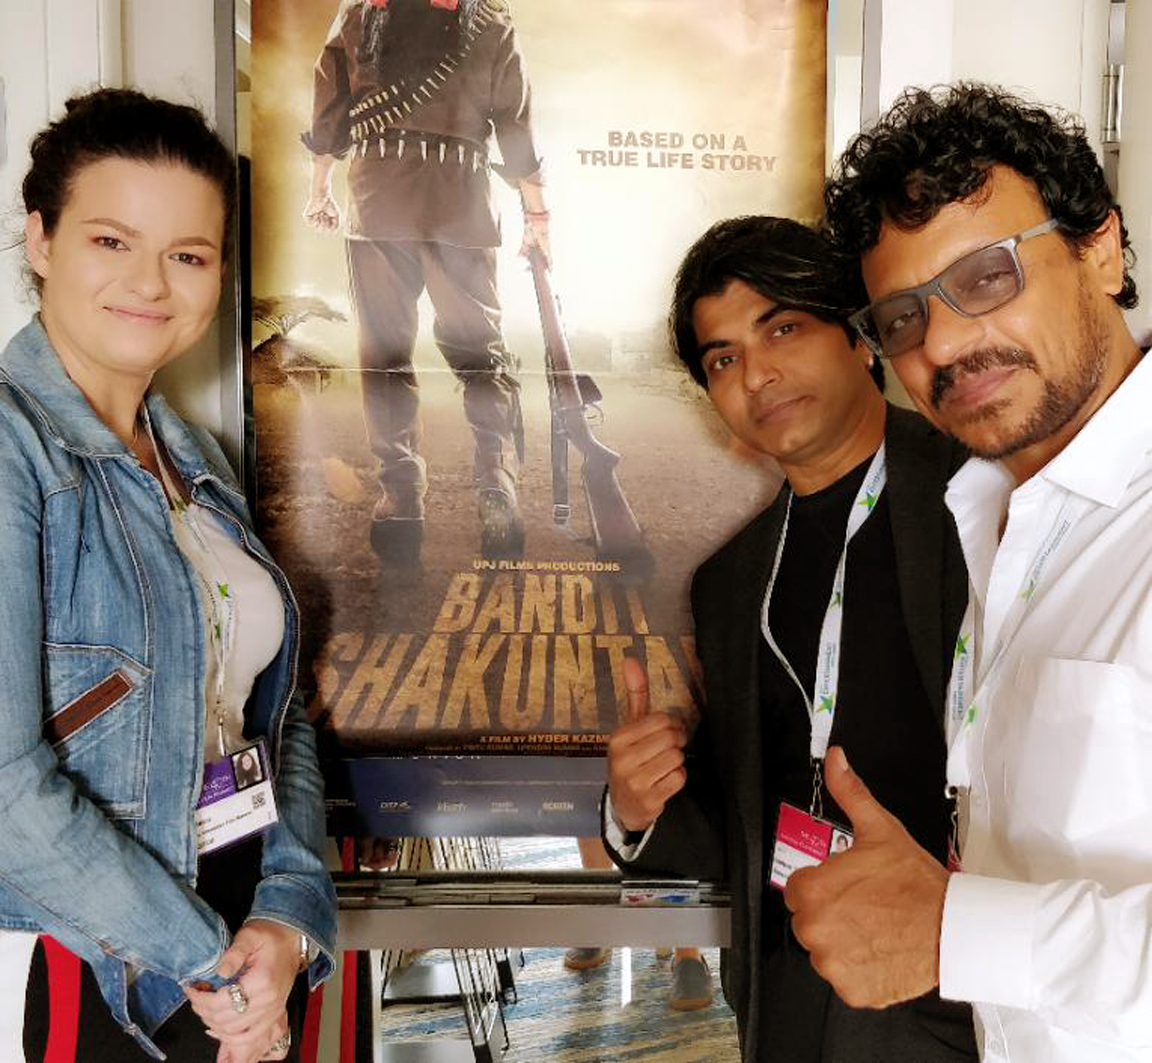 Bandit Shakuntala revealed In American Film Market - AFM